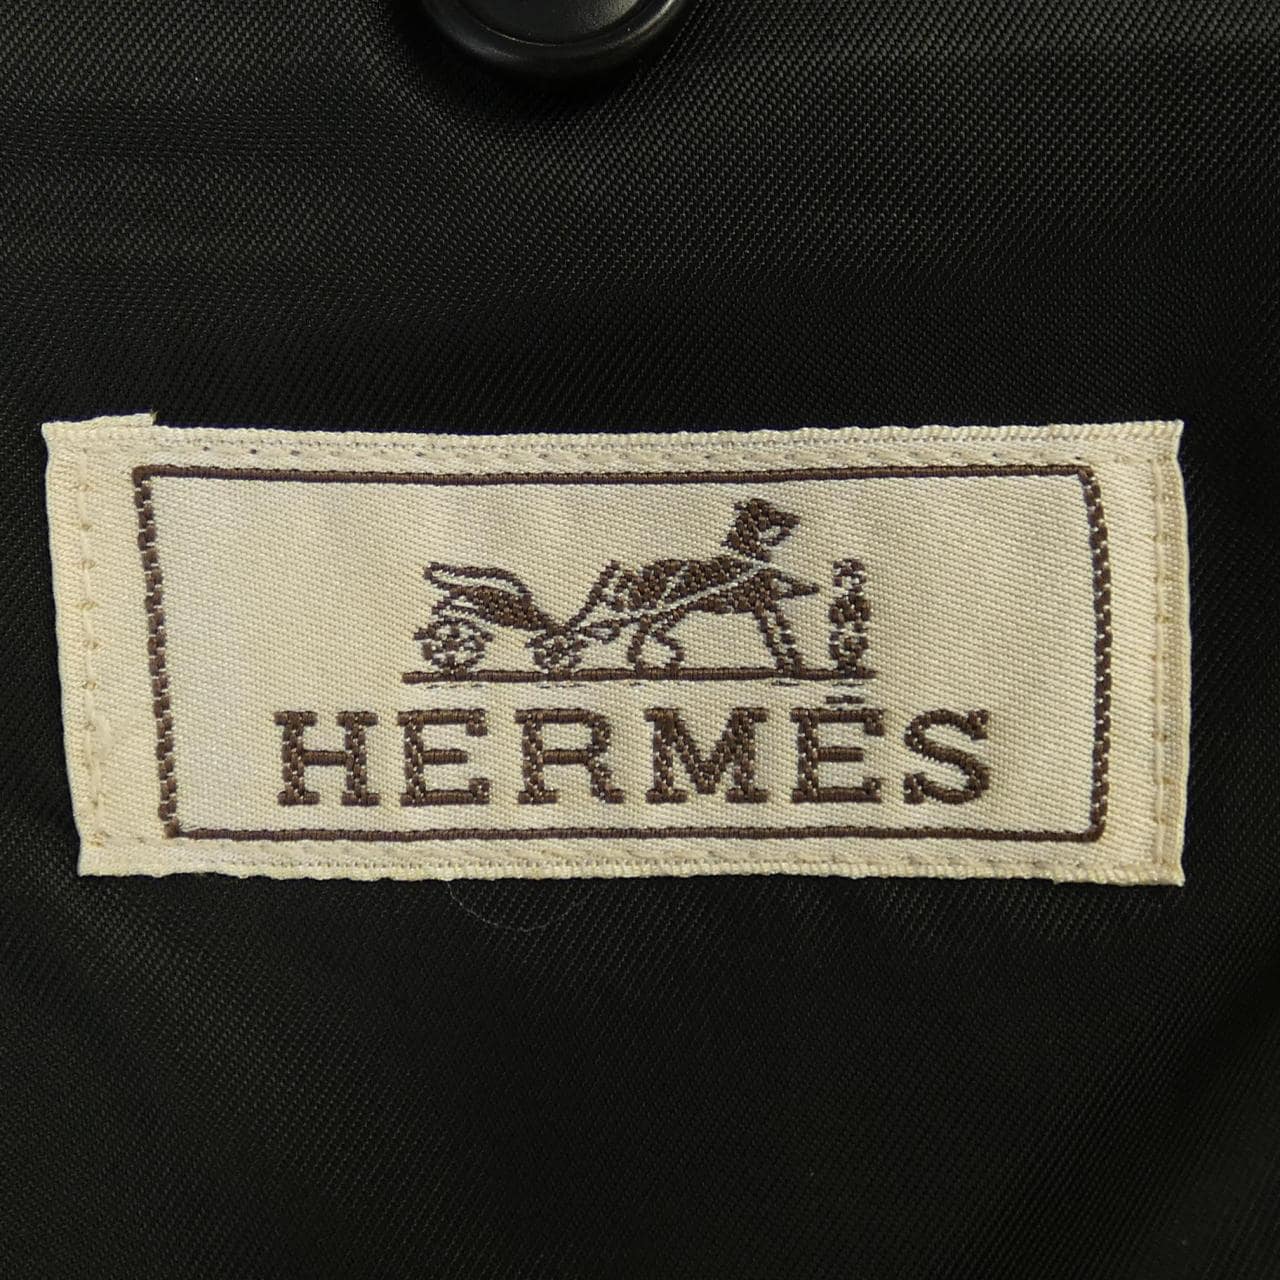 HERMES HERMES Jacket